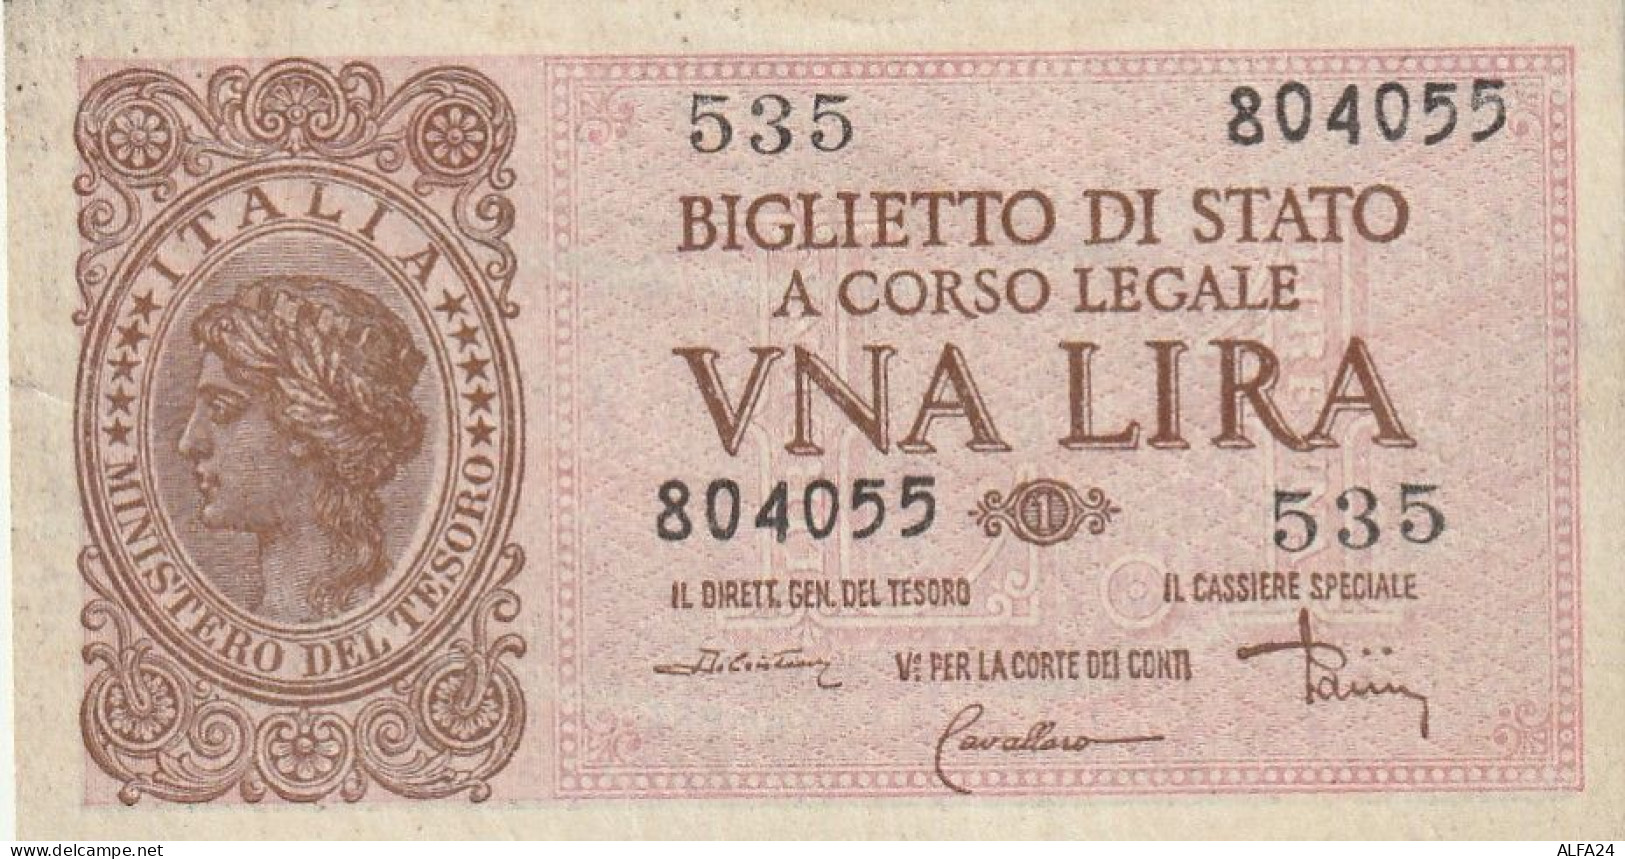 BANCONOTA BIGLIETTO DI STATO ITALIA 1 LIRA EF  (B_369 - Italië – 1 Lira